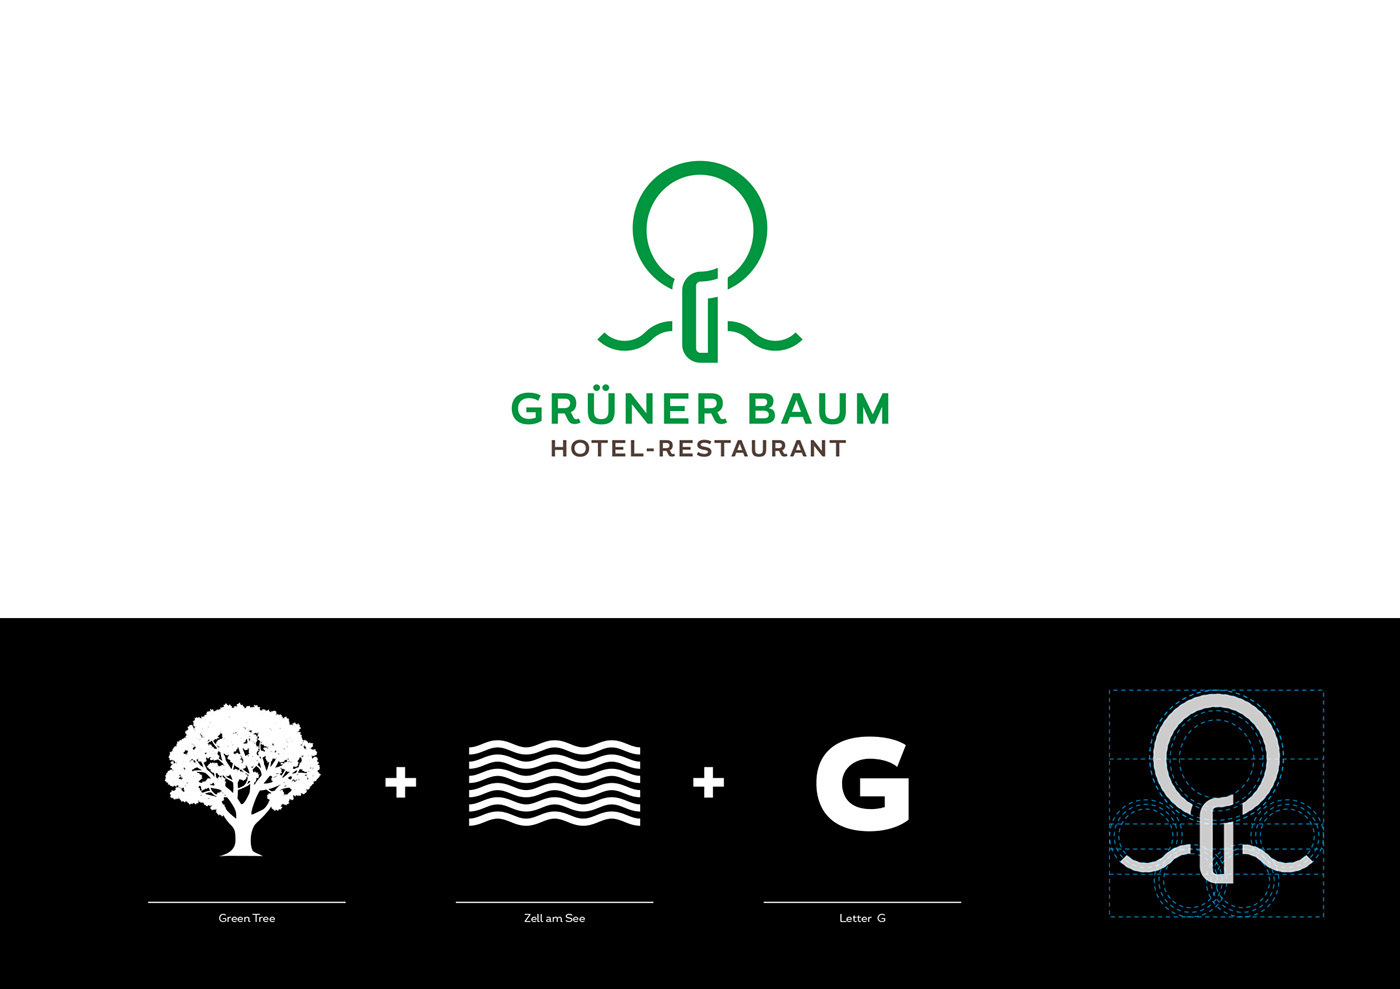 hotel restaurant green branding  art direction  hotel design Grüner Baum zell am See Roland Radschopf Design from Vienna